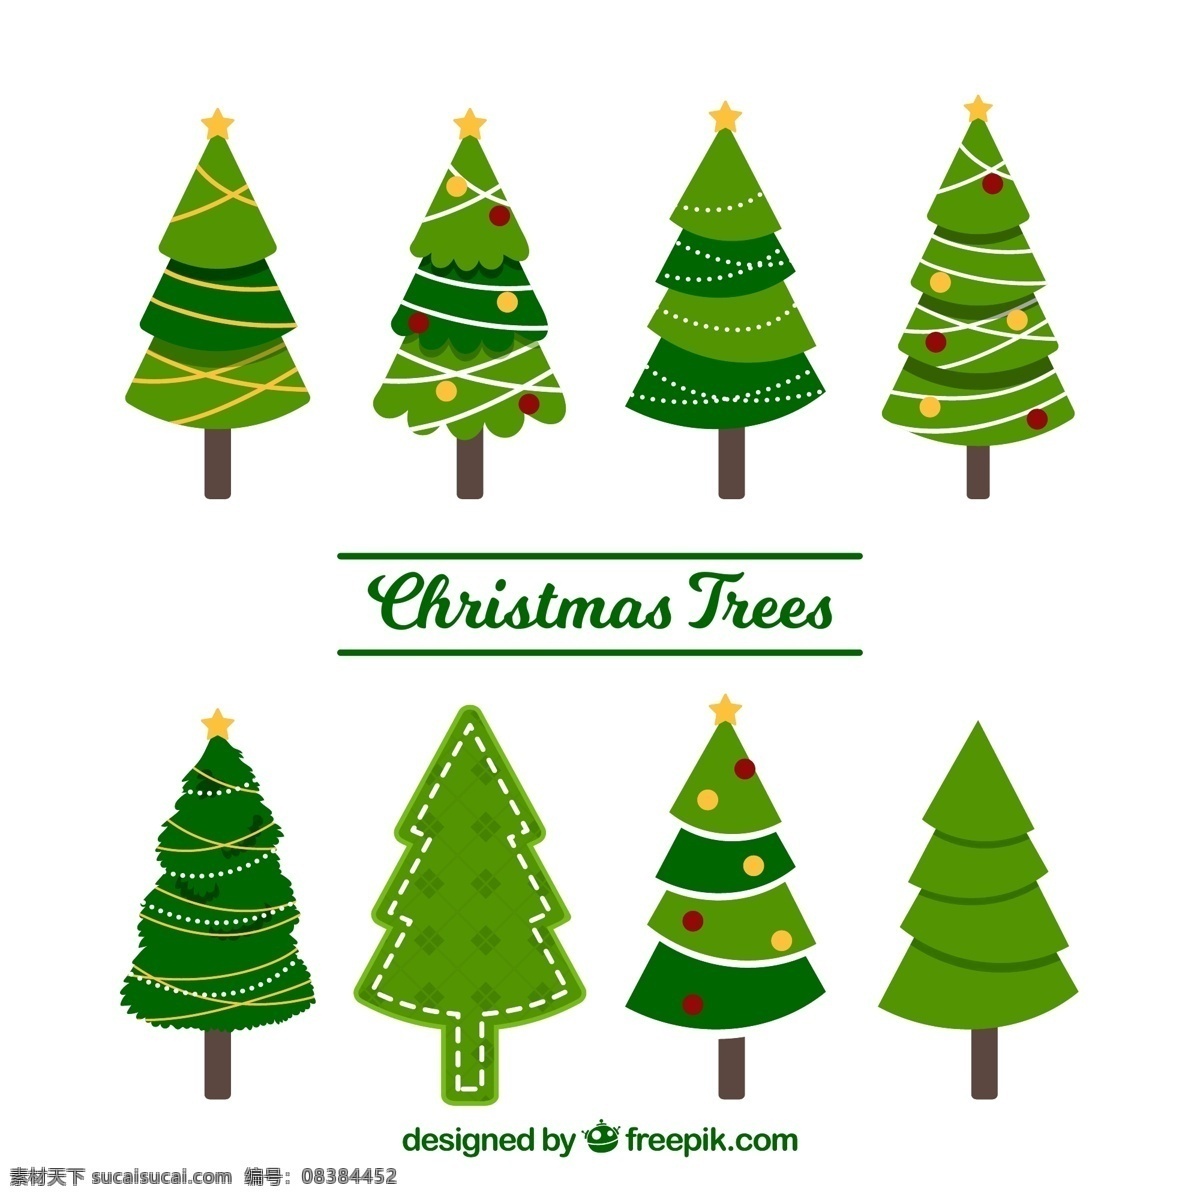 款 创意 绿色 圣诞树 矢量 树木 松树 圣诞节 文化艺术 绘画书法